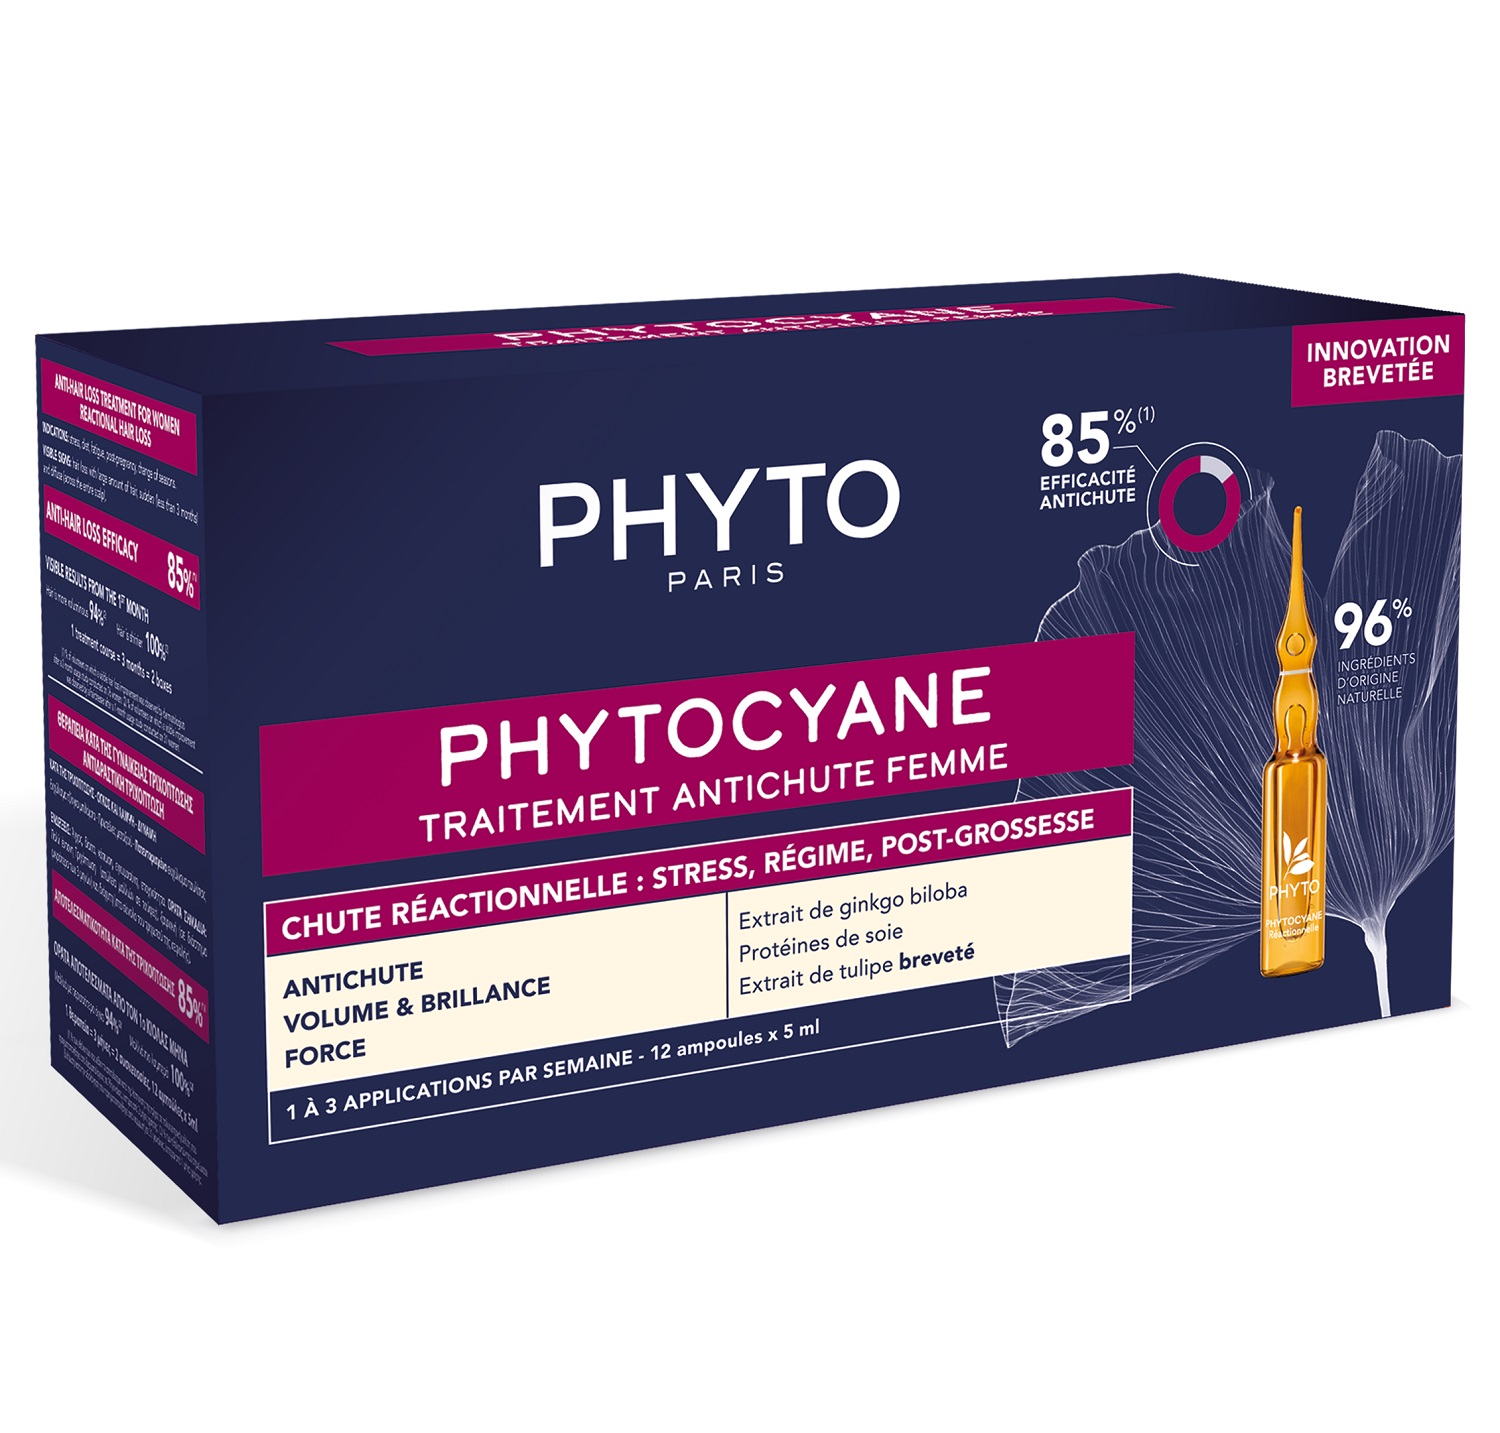 Phyto Сыворотка против выпадения волос для женщин, 12 ампул х 5 мл (Phyto, Phytocyane) сыворотка phyto против выпадения волос для женщин 12 ампул х 5 мл